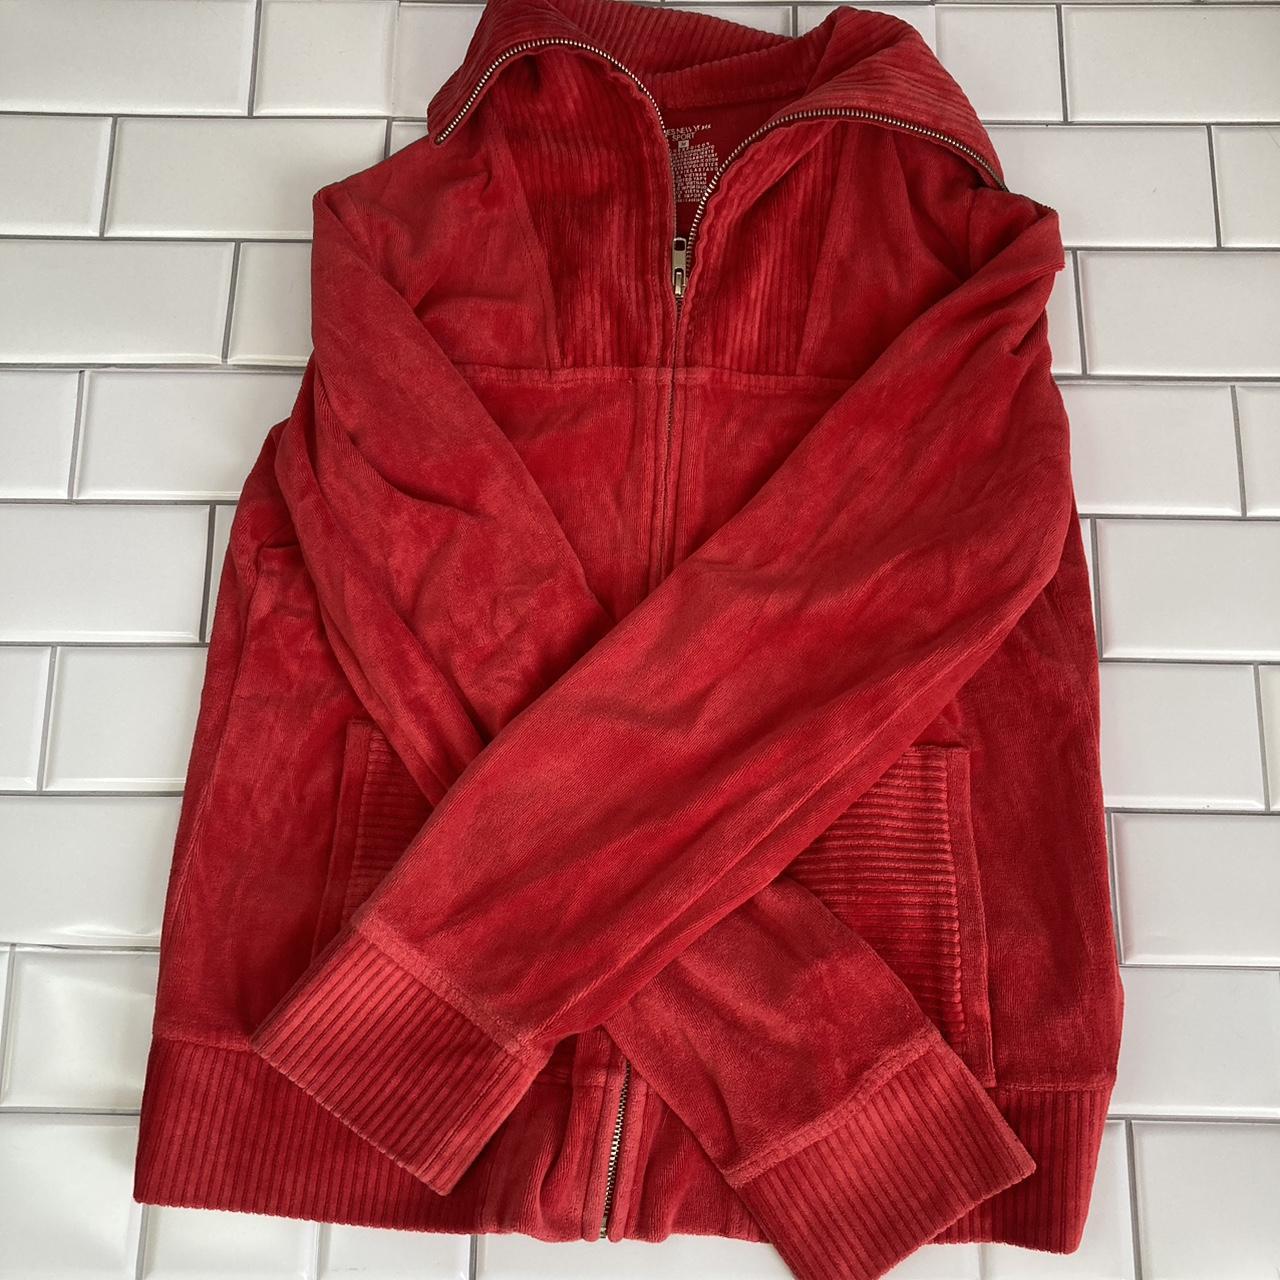 Vintage Jones New York Sport jacket Cute red... - Depop